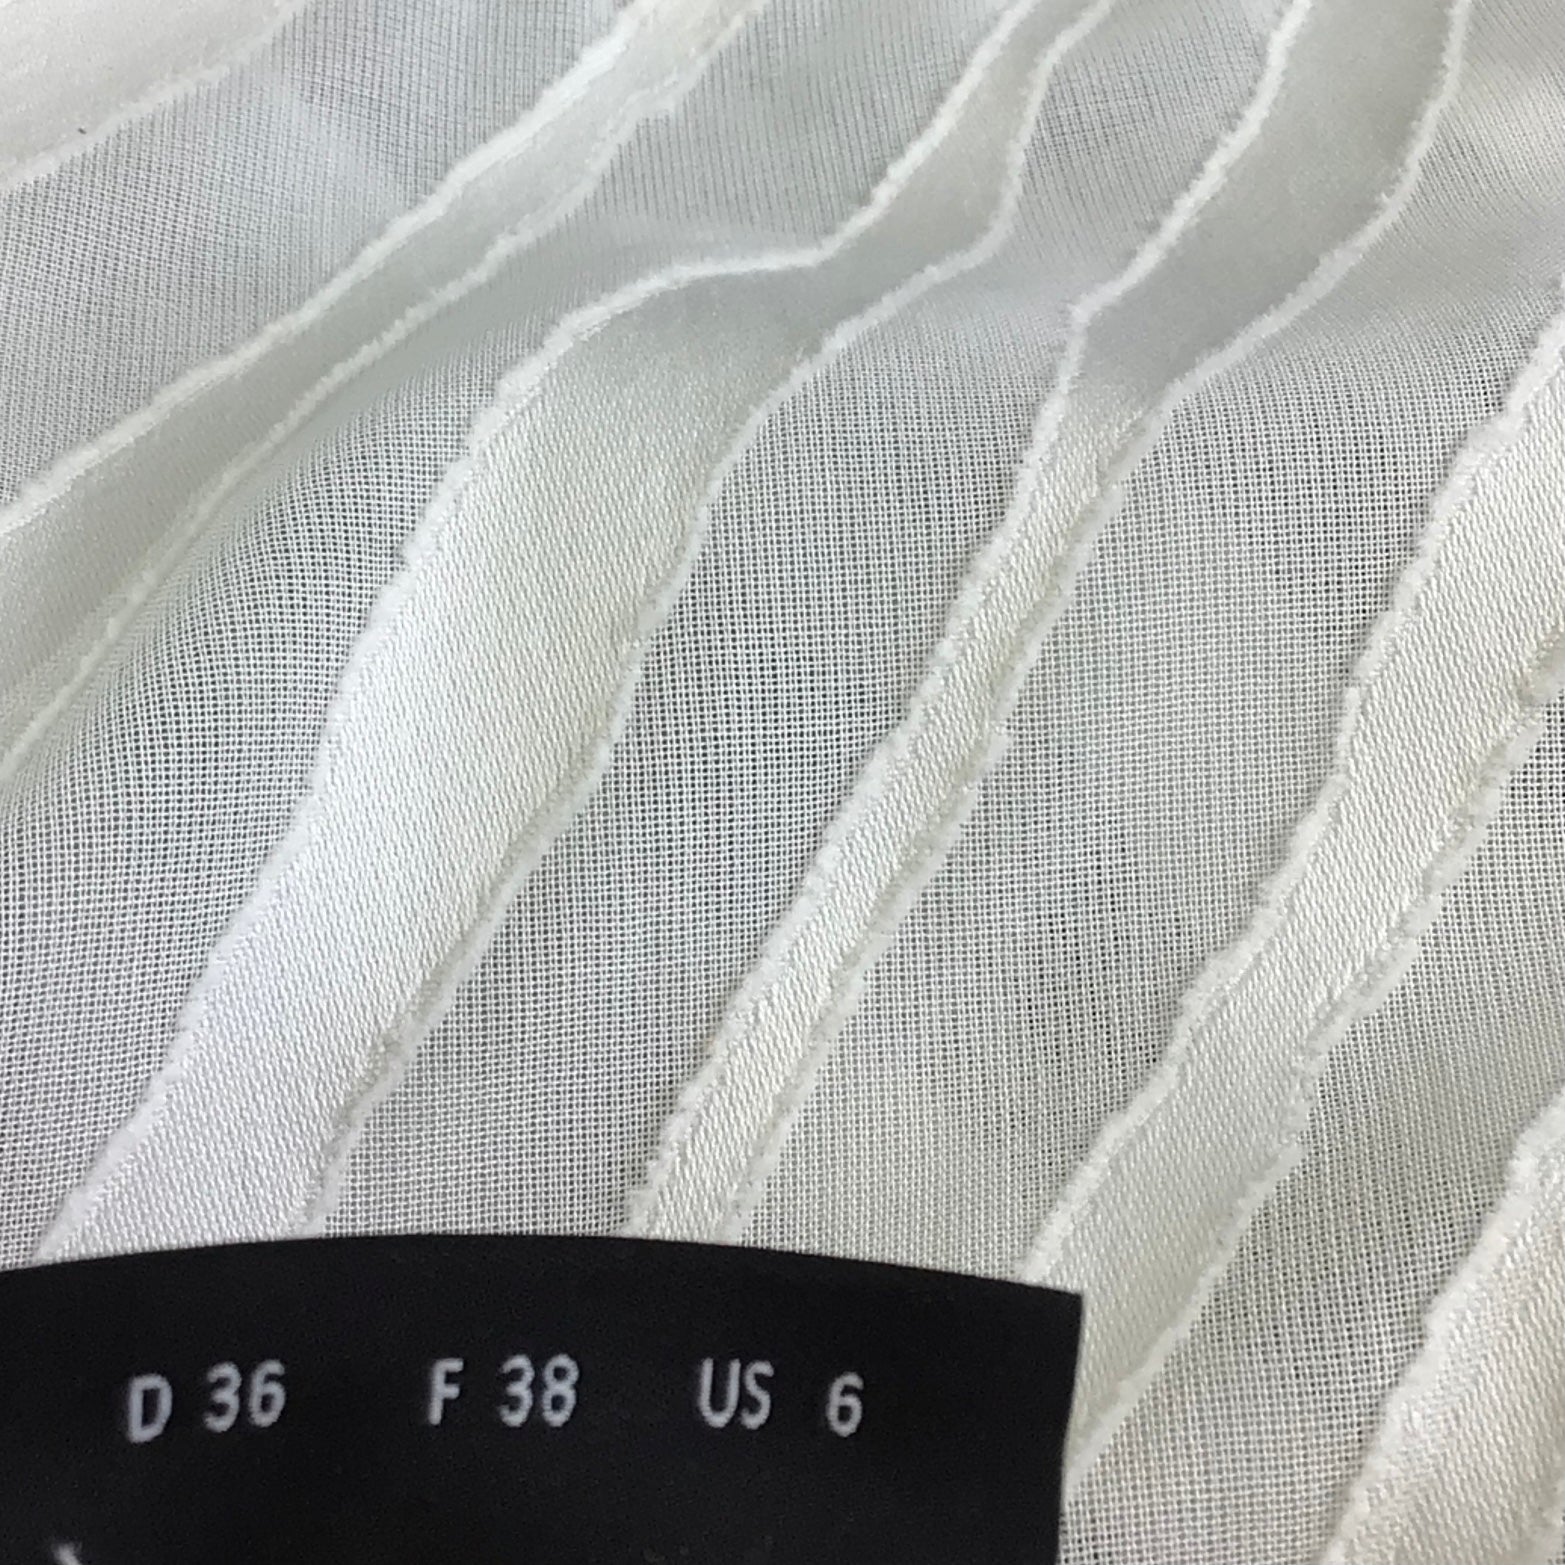 Akris White Short Sleeved Cotton Tunic Top